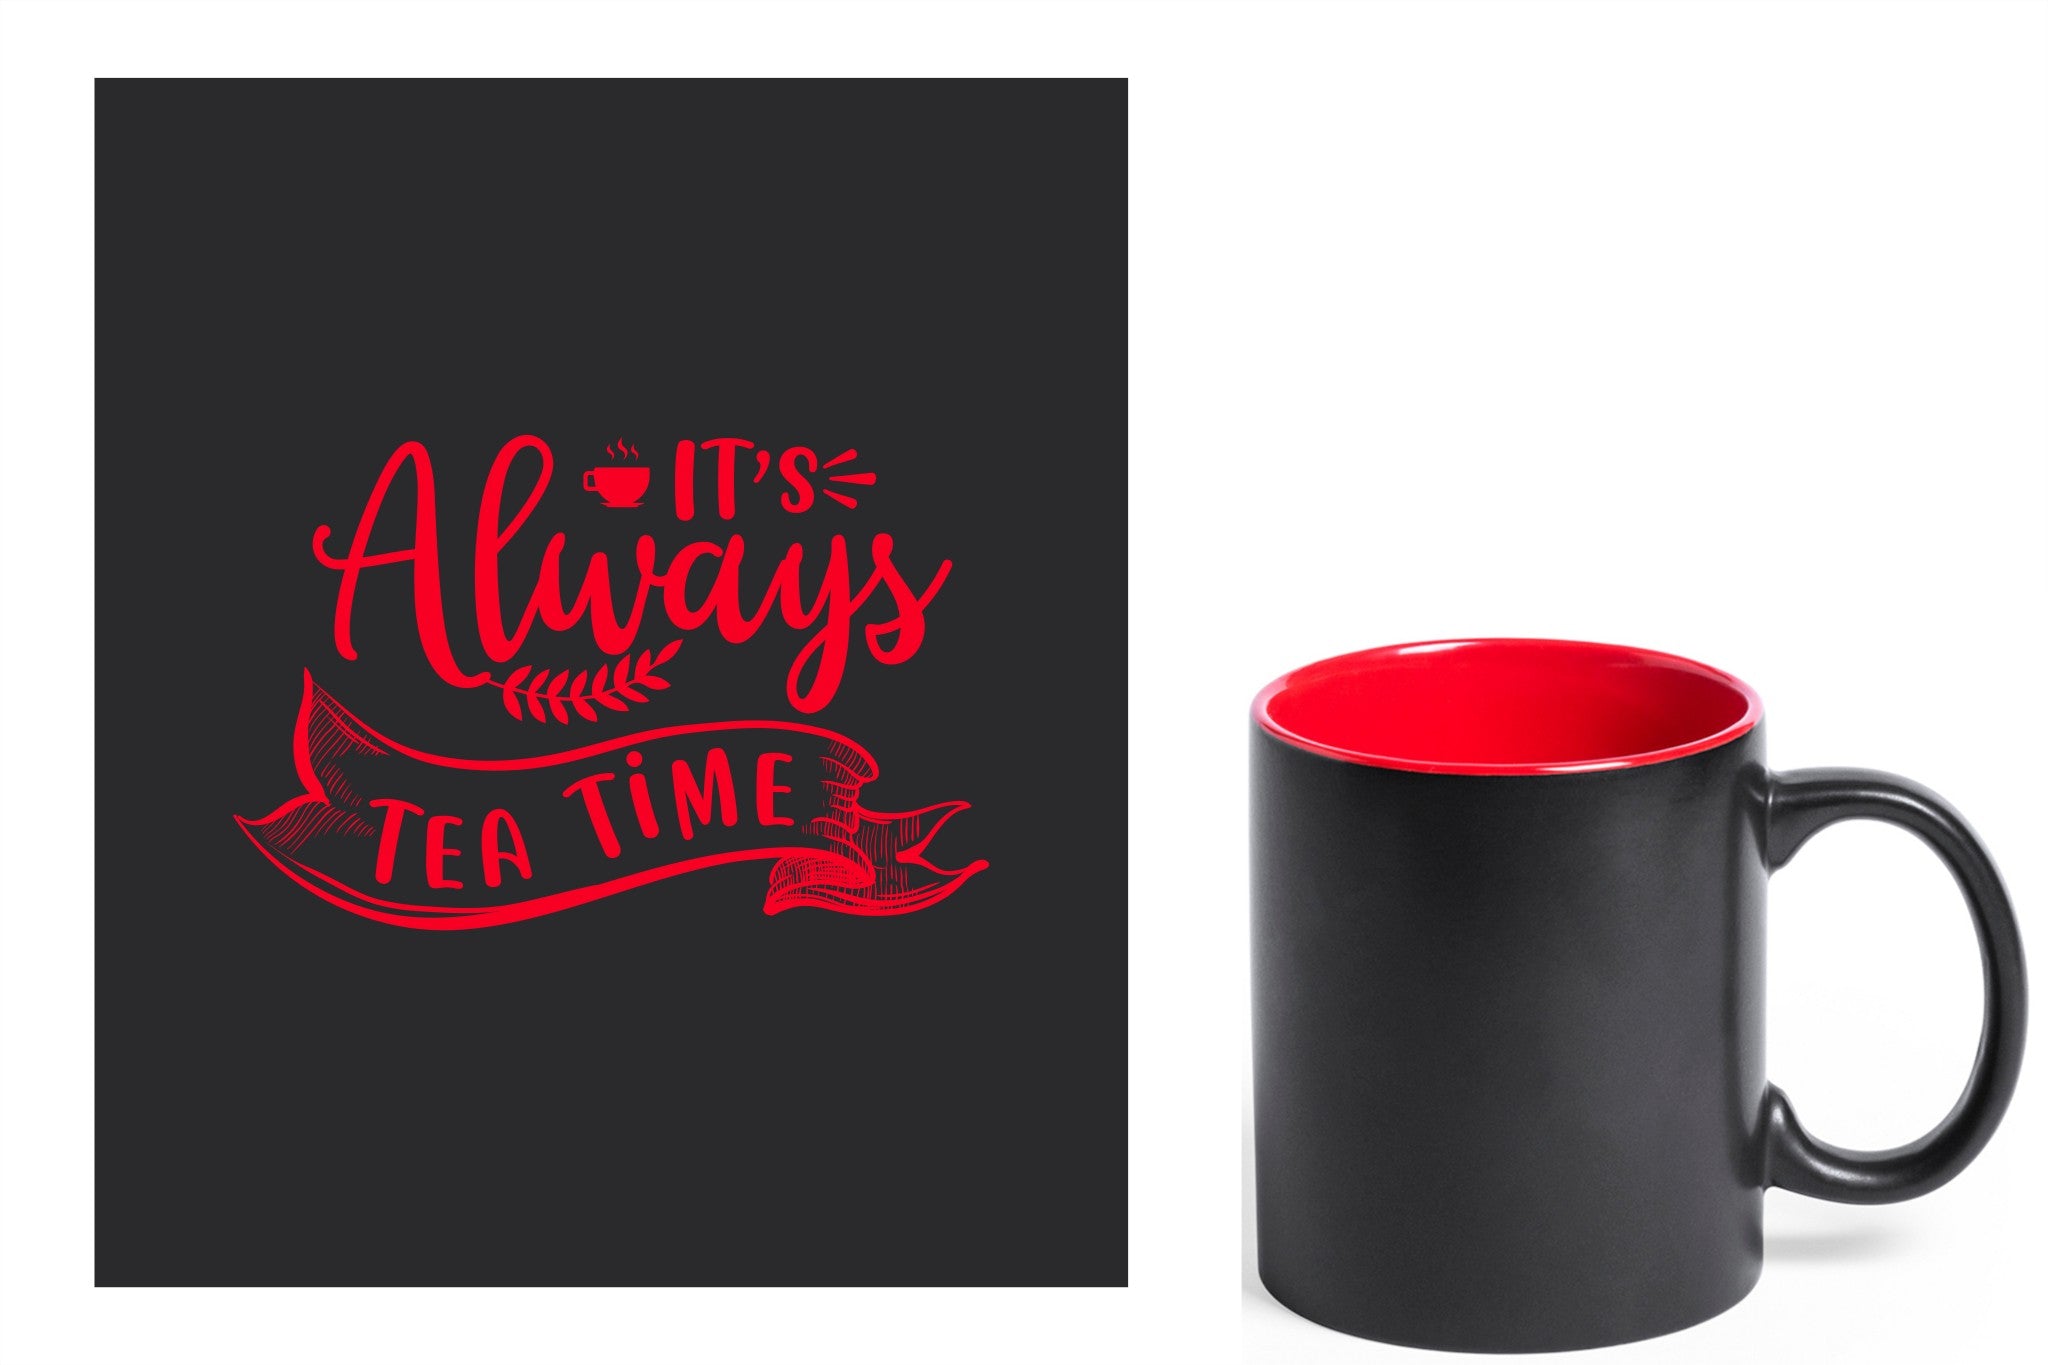 zwarte keramische mok met rode gravure  'It's always tea time'.